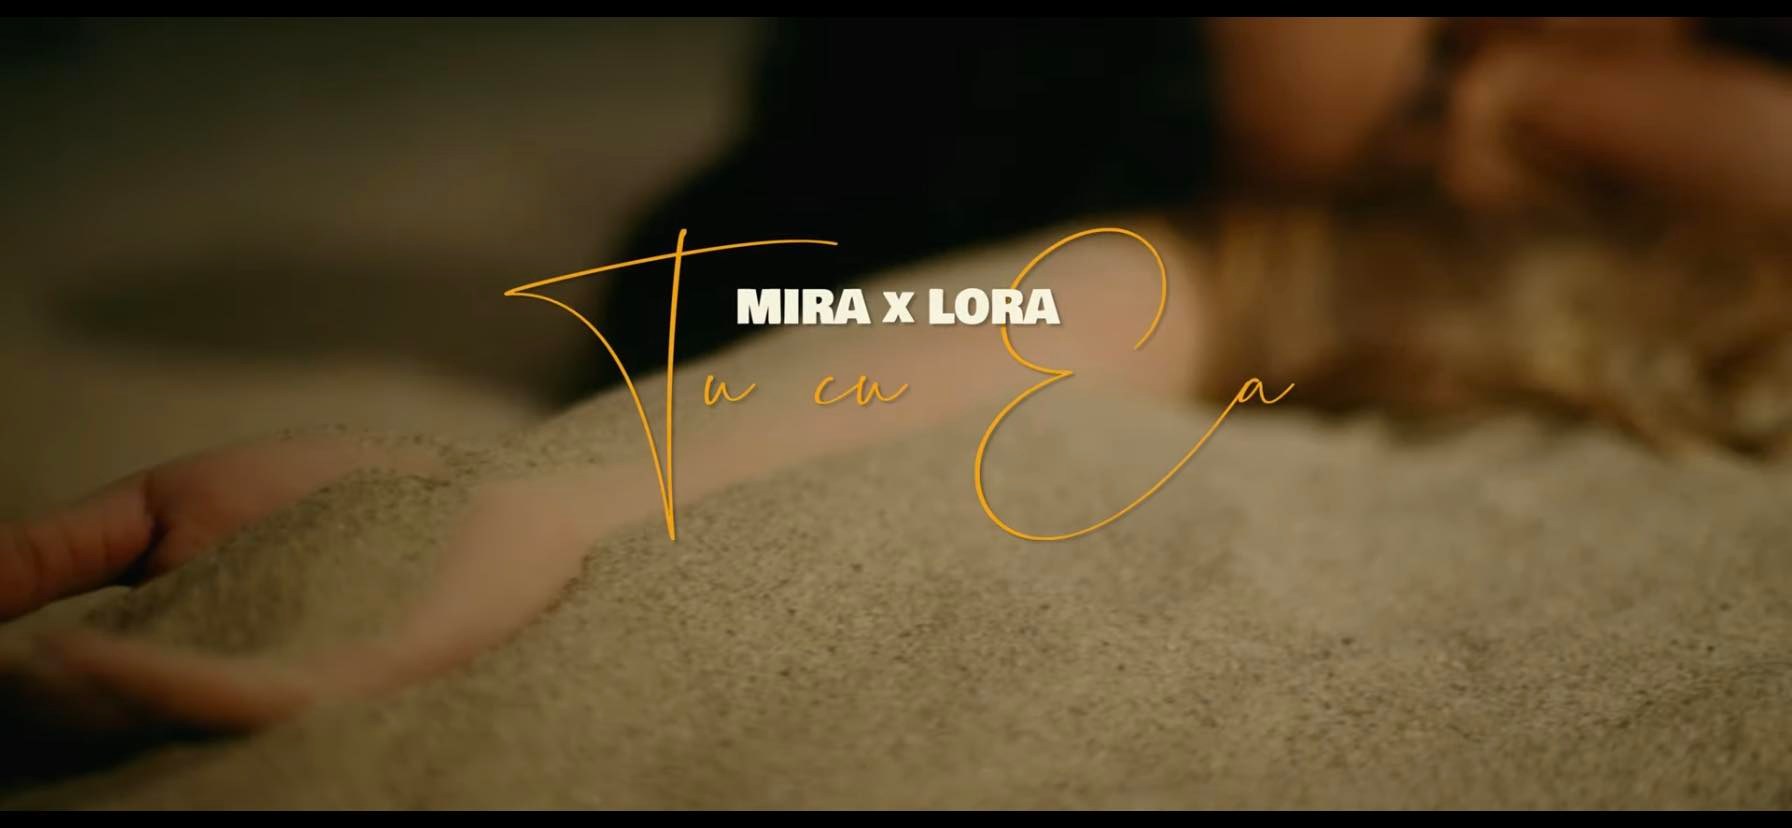 Lora și Mira au colaborat pentru prima dată și au lansat Tu cu ea. Piesa s-a auzit în avanpremieră în Morning ZU